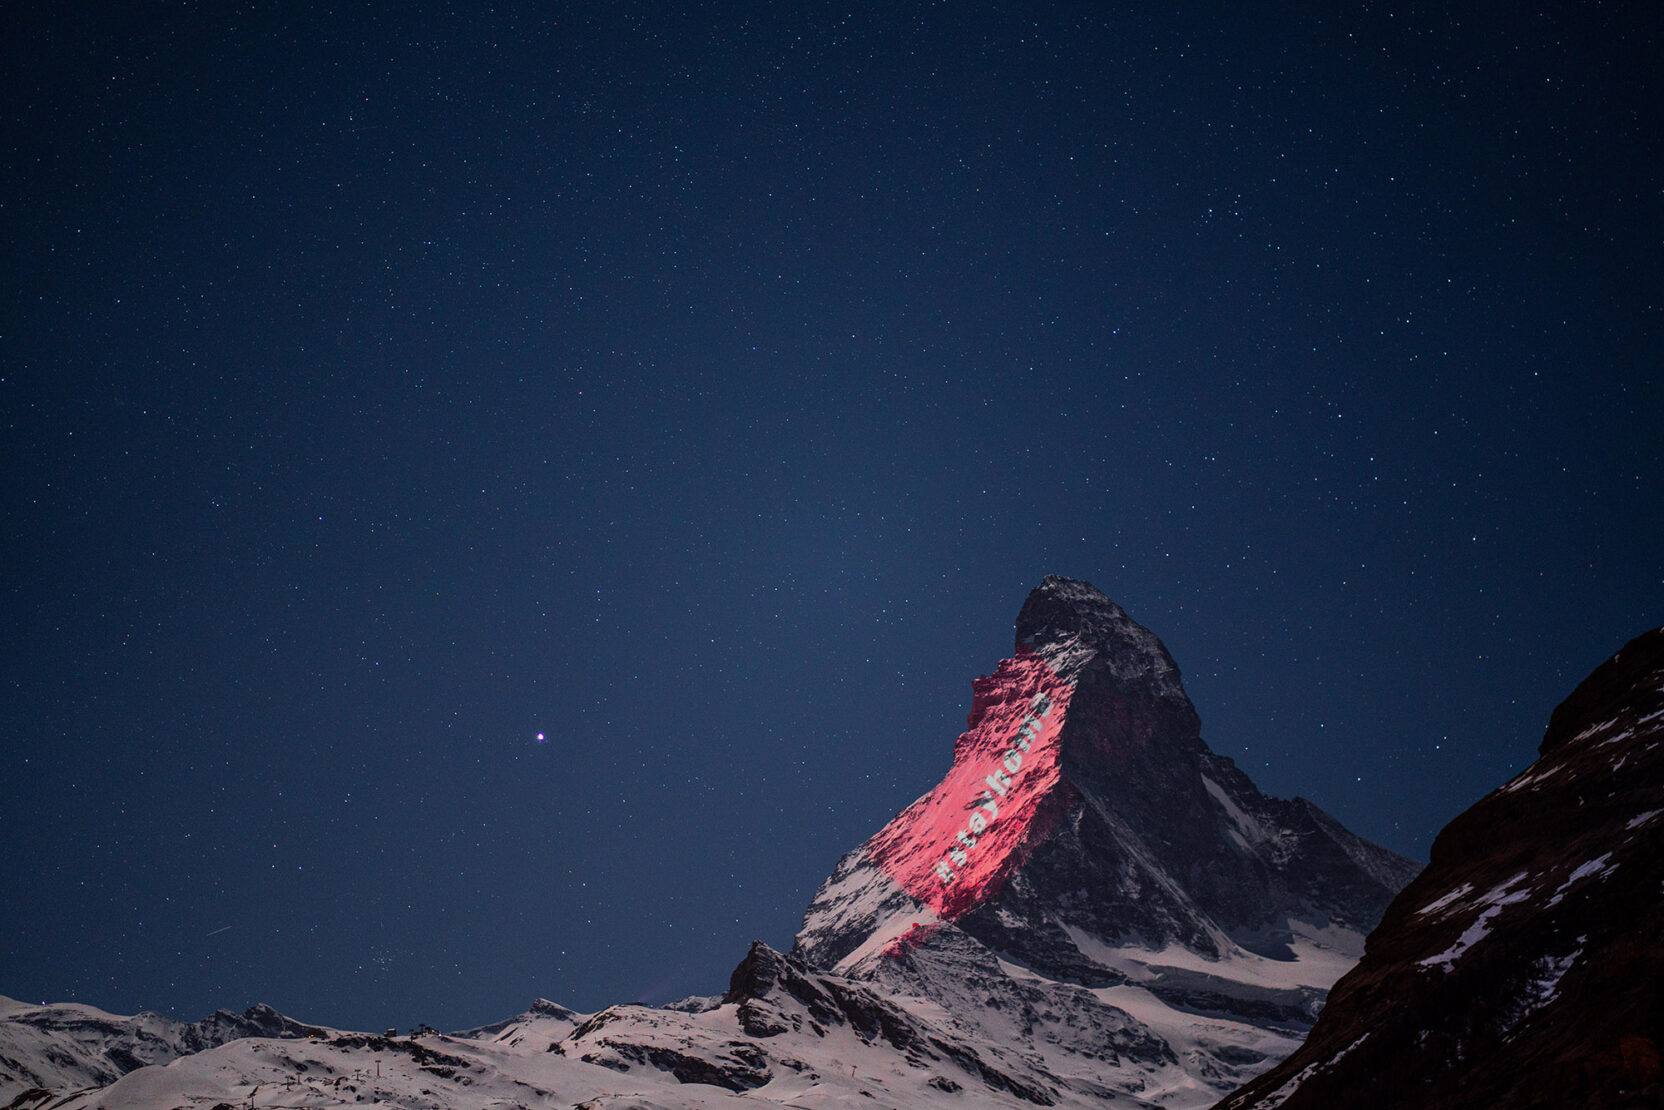 Light art on Matterhorn sends signs of hope